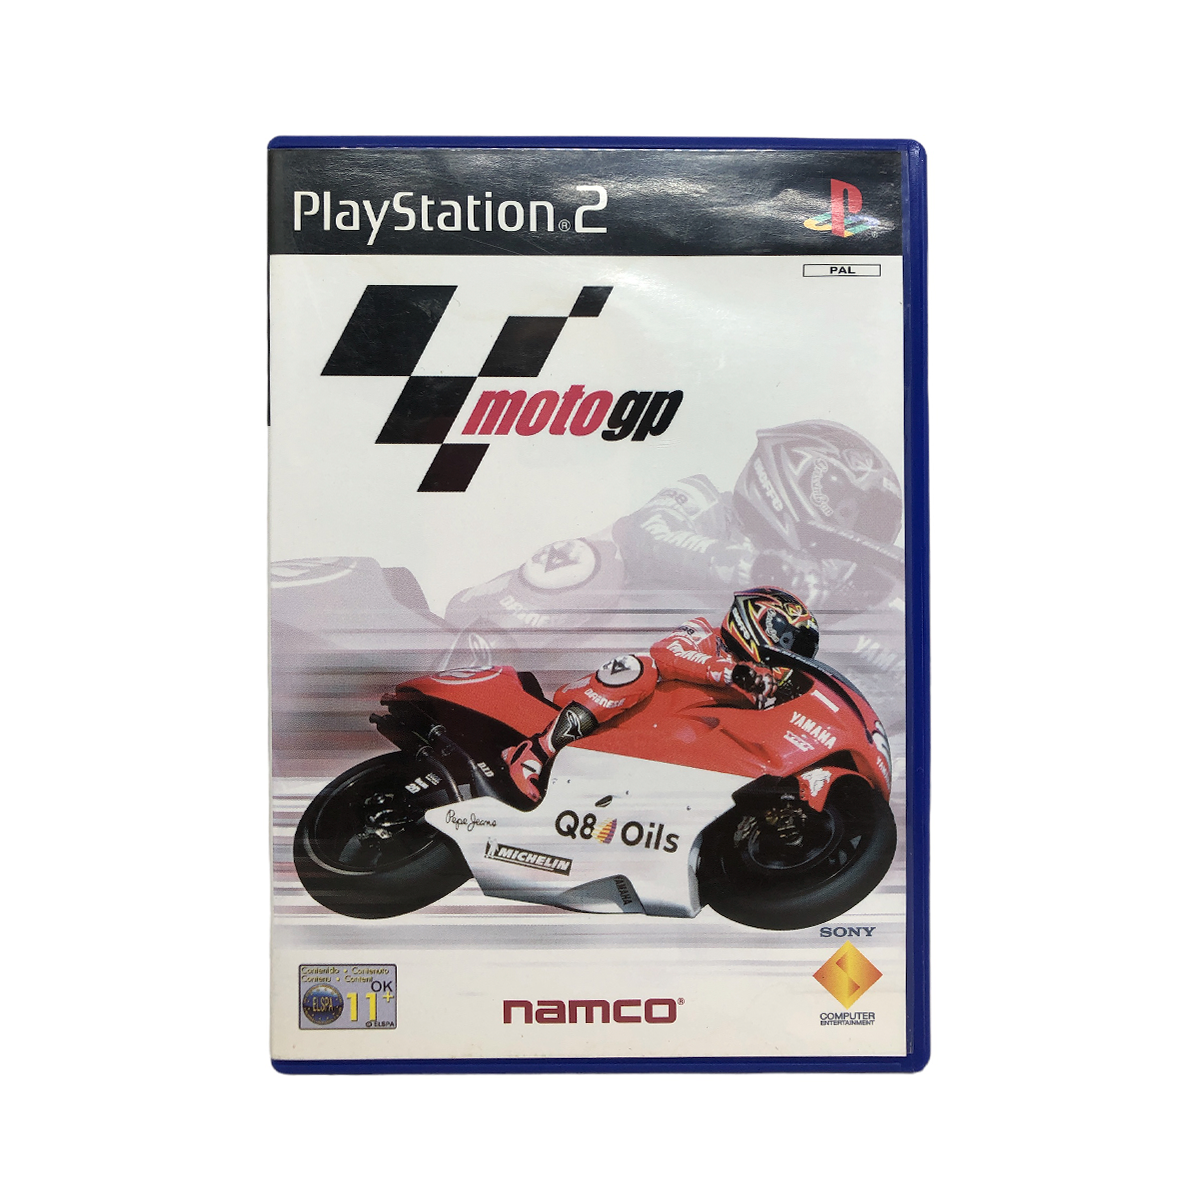 MotoGP 2 PS2 (Seminovo) - Play n' Play